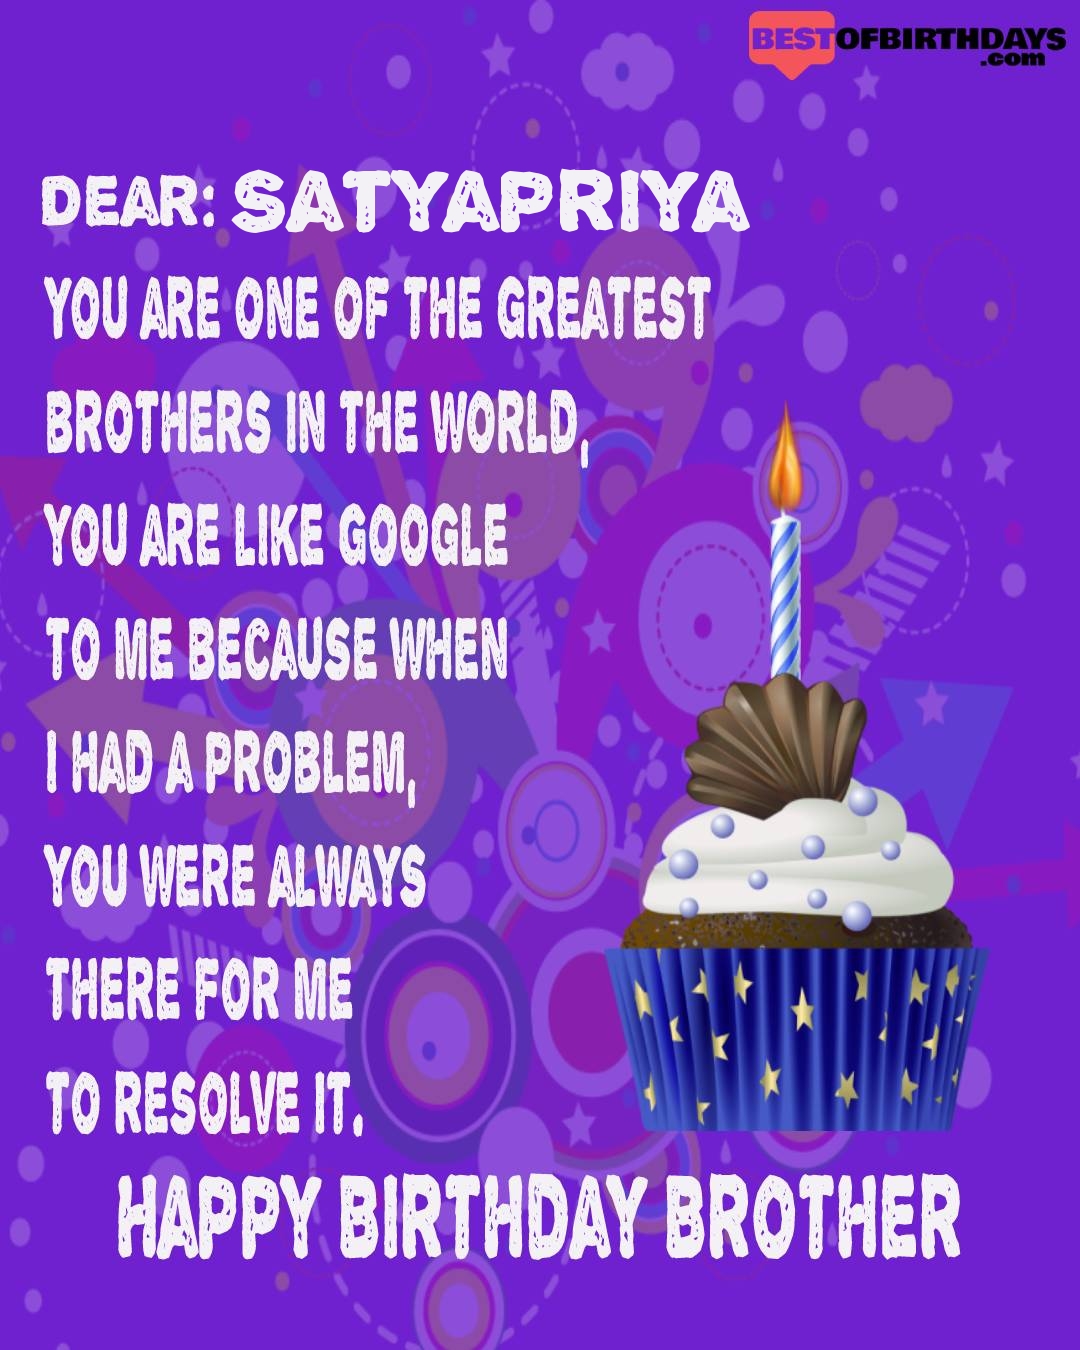 Happy birthday satyapriya bhai brother bro